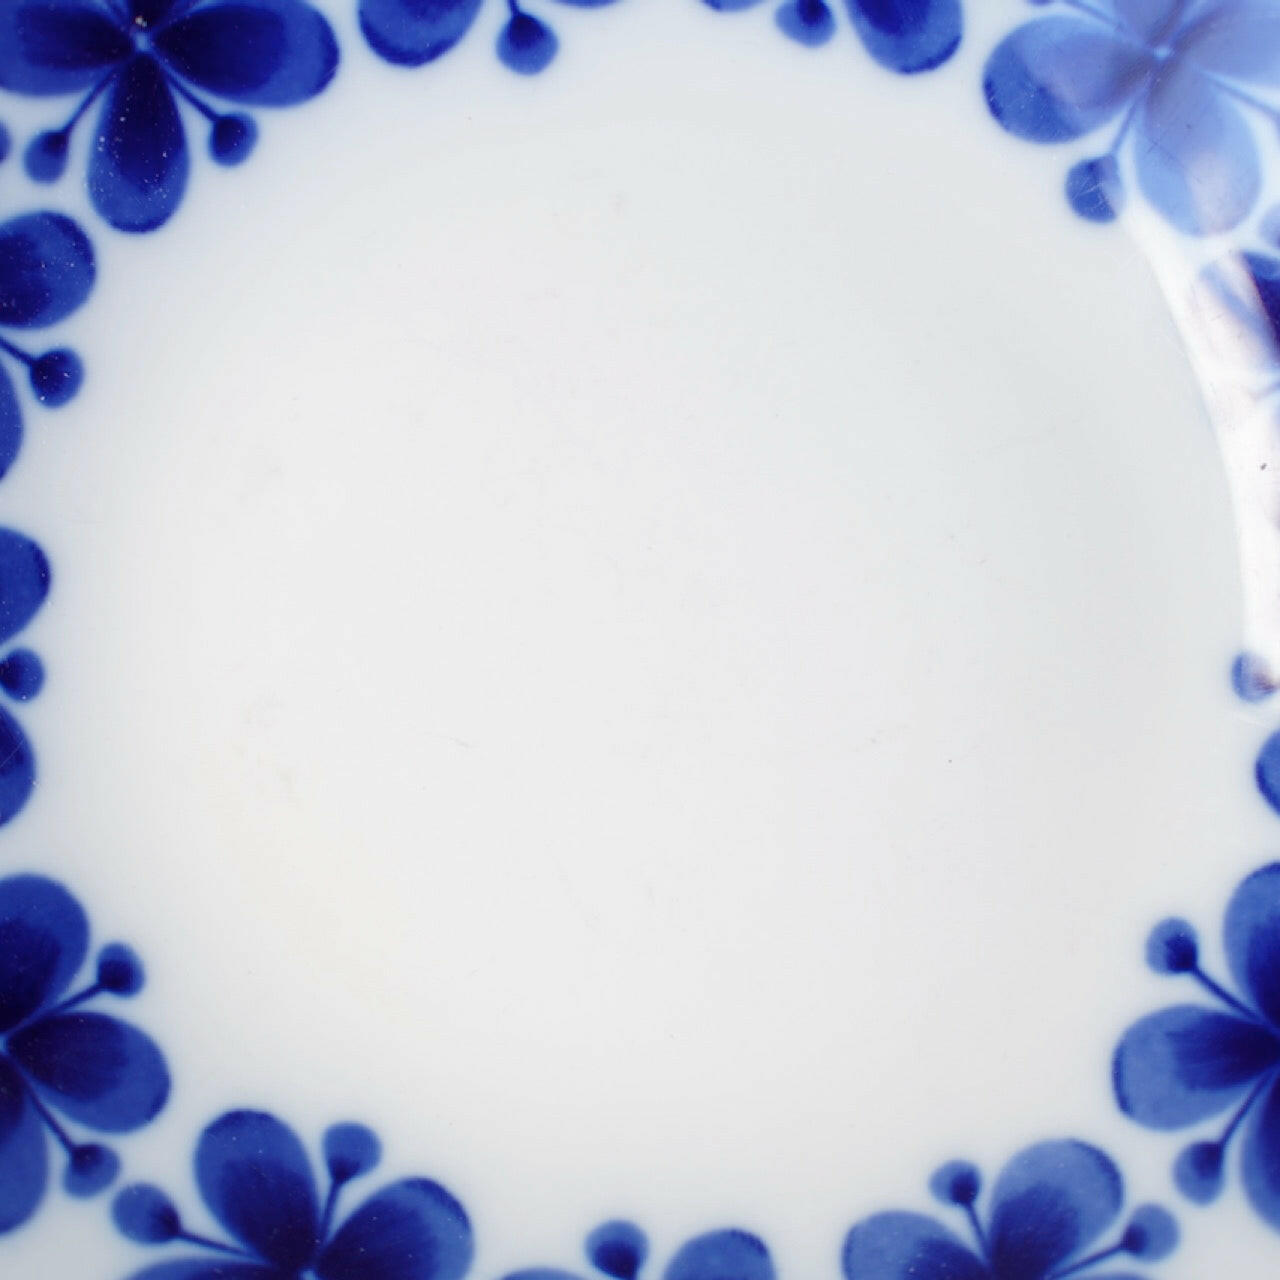 訳あり品 ロールストランド モナミ（Mon Amie）深皿 スープ皿 Plates Gustavsberg   